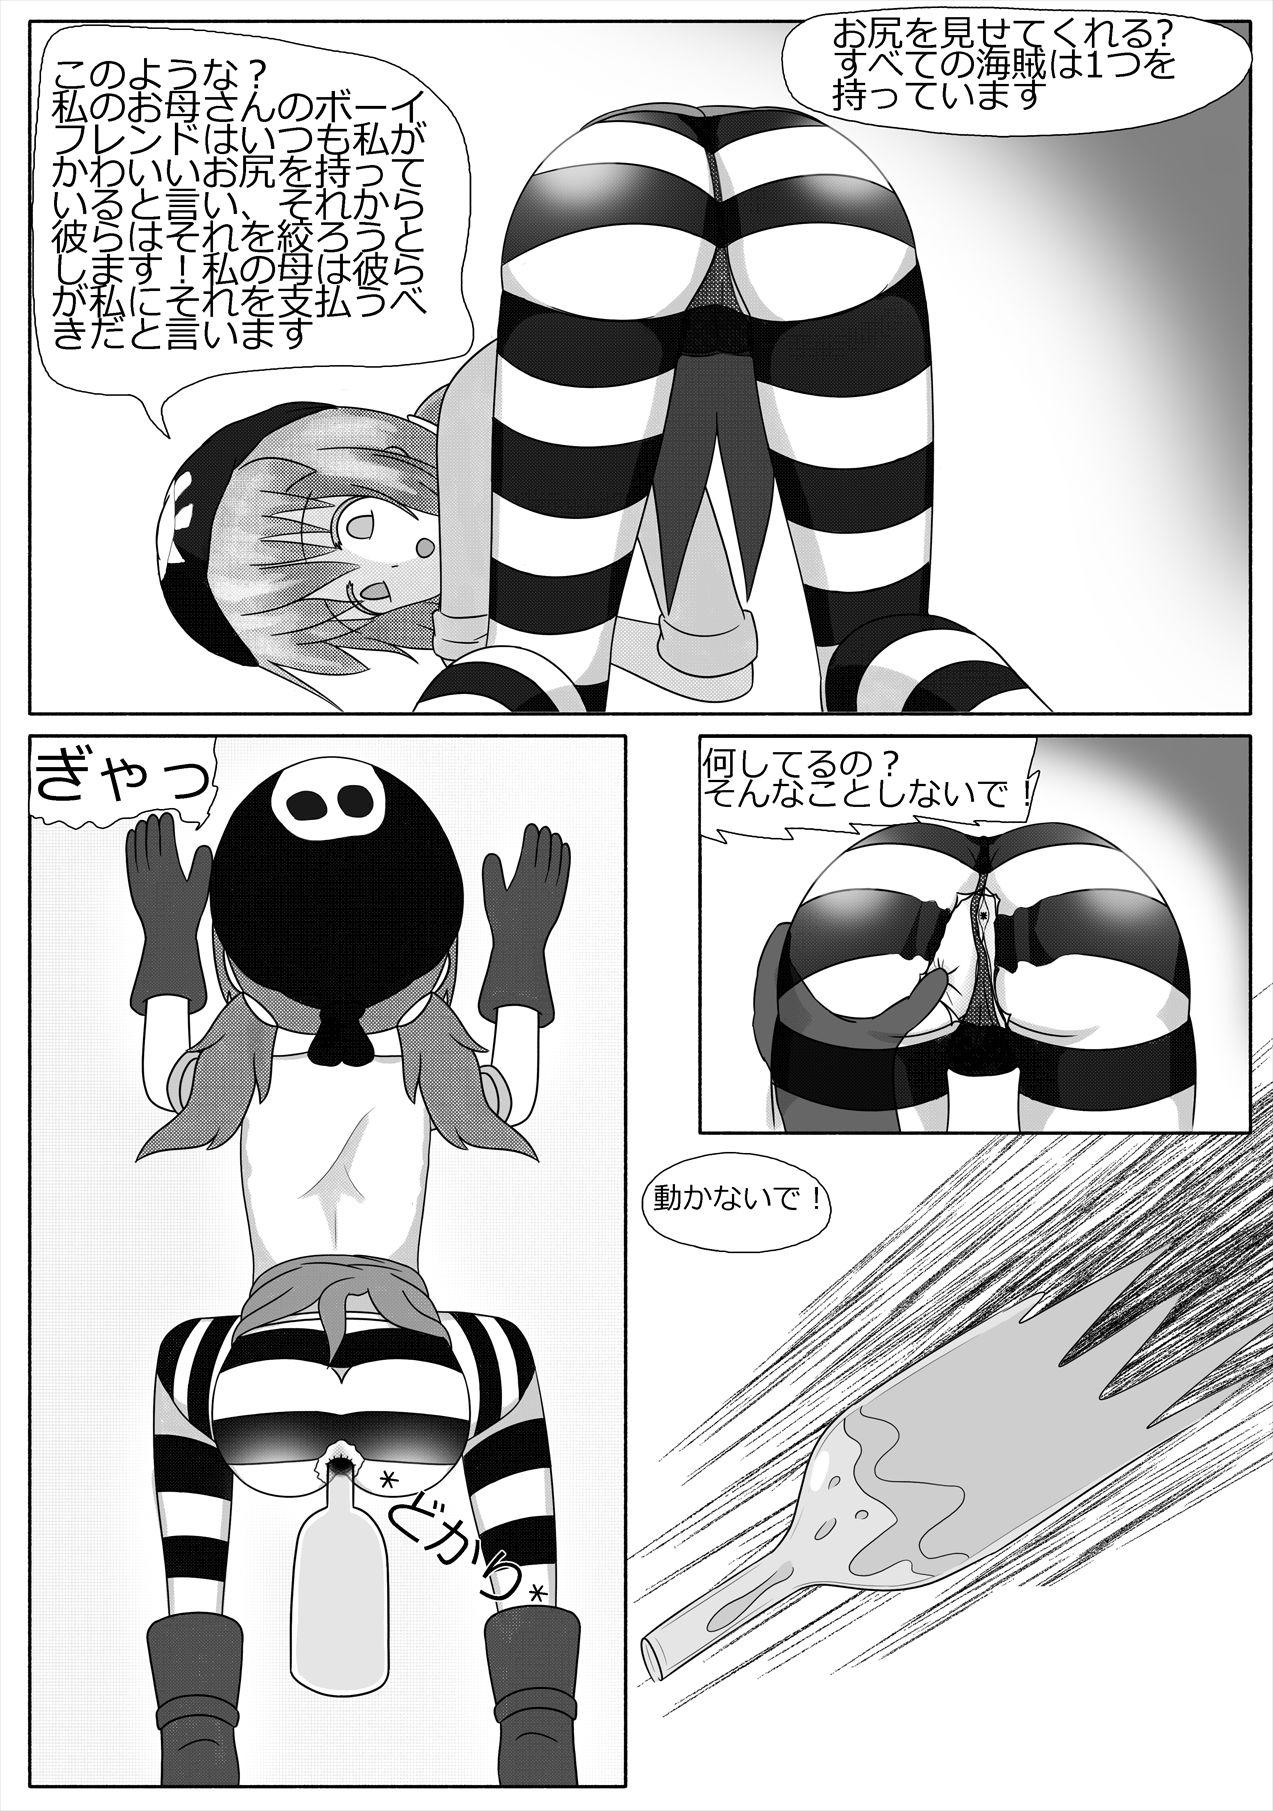 Best Blow Job 「ロリマンサー」 鴨が葱をしょって来る 「日本語」 Mum - Page 4